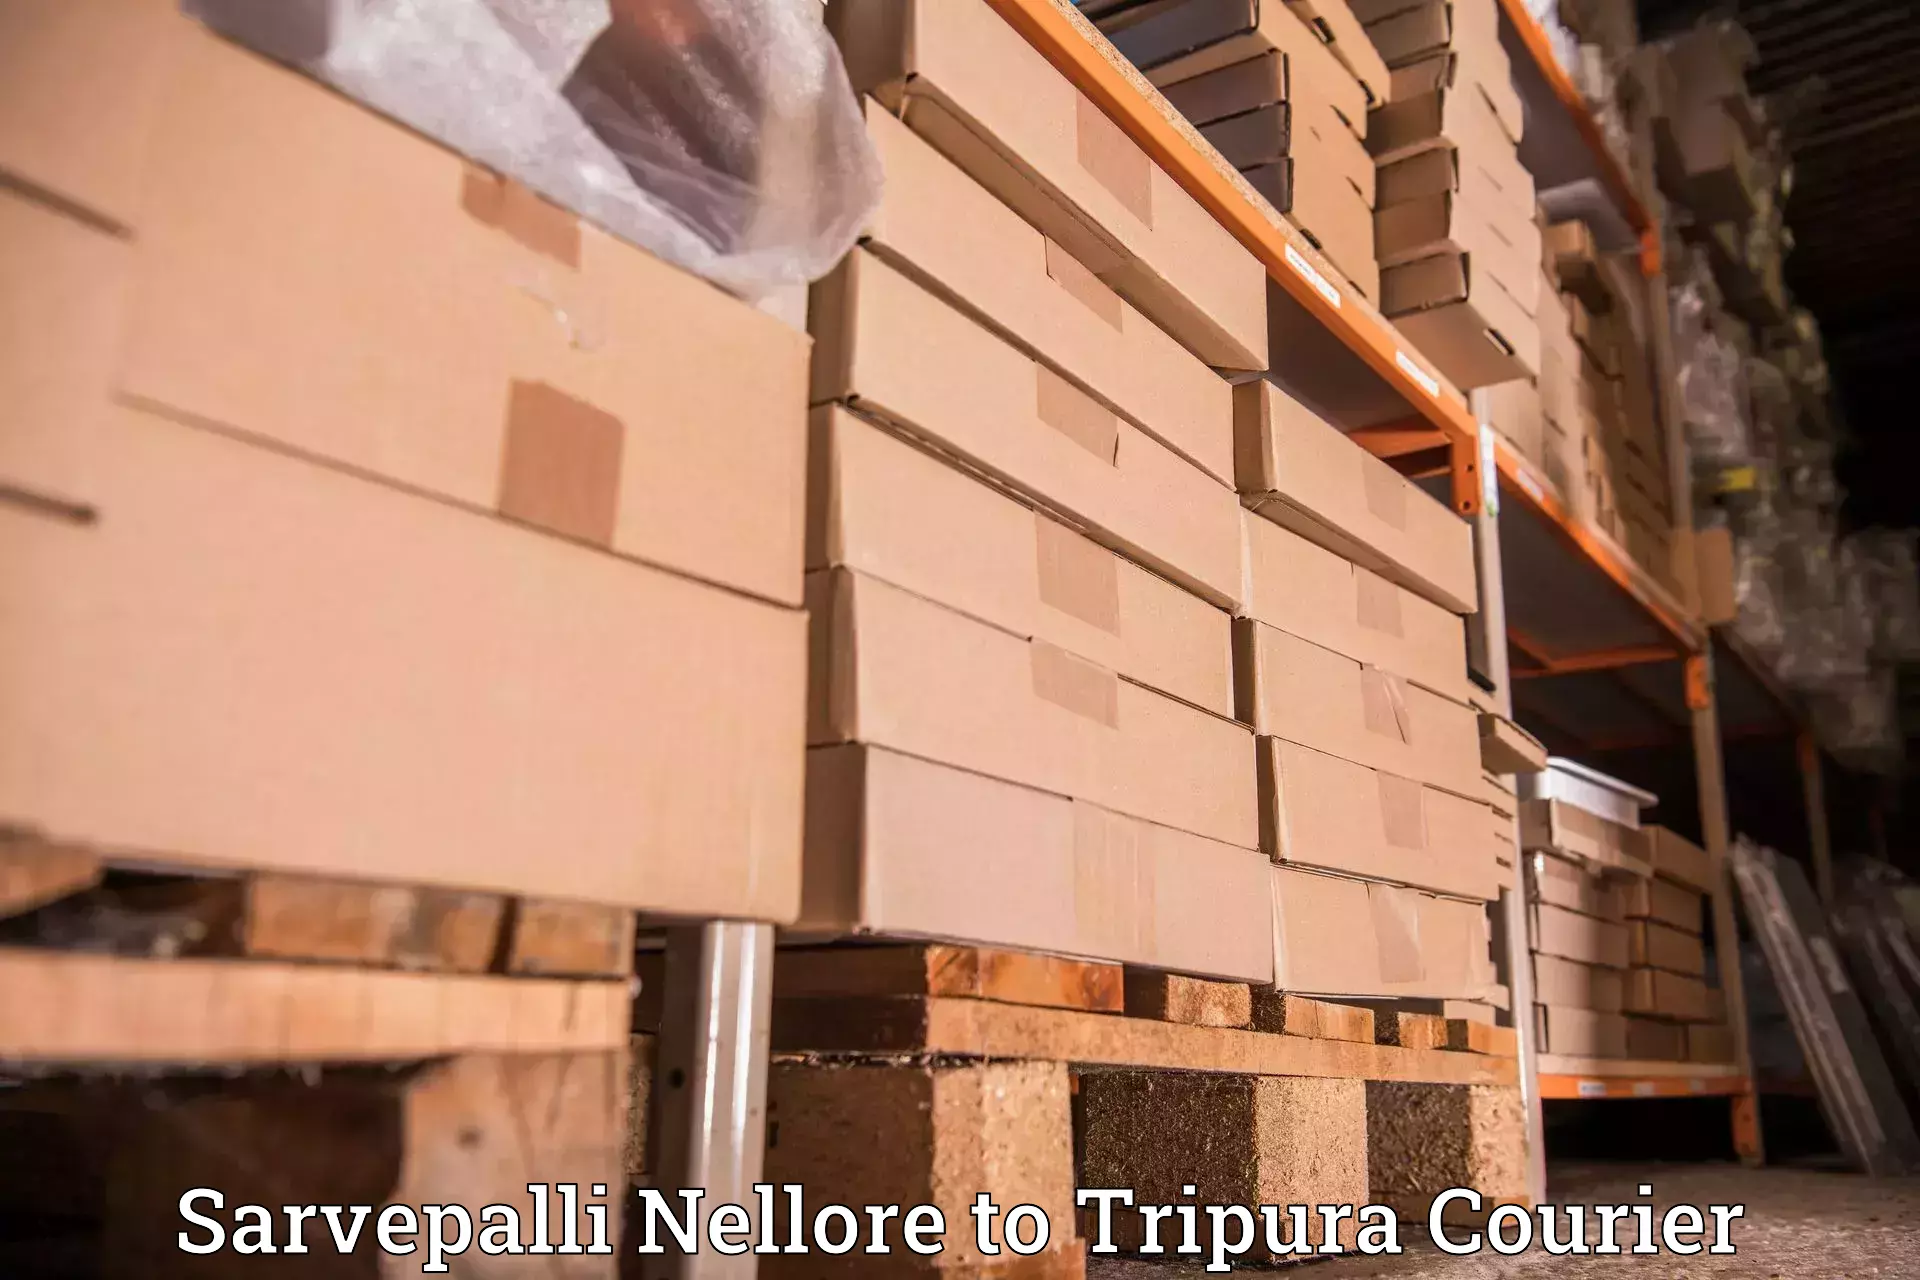 Business delivery service Sarvepalli Nellore to Amarpur Gomati